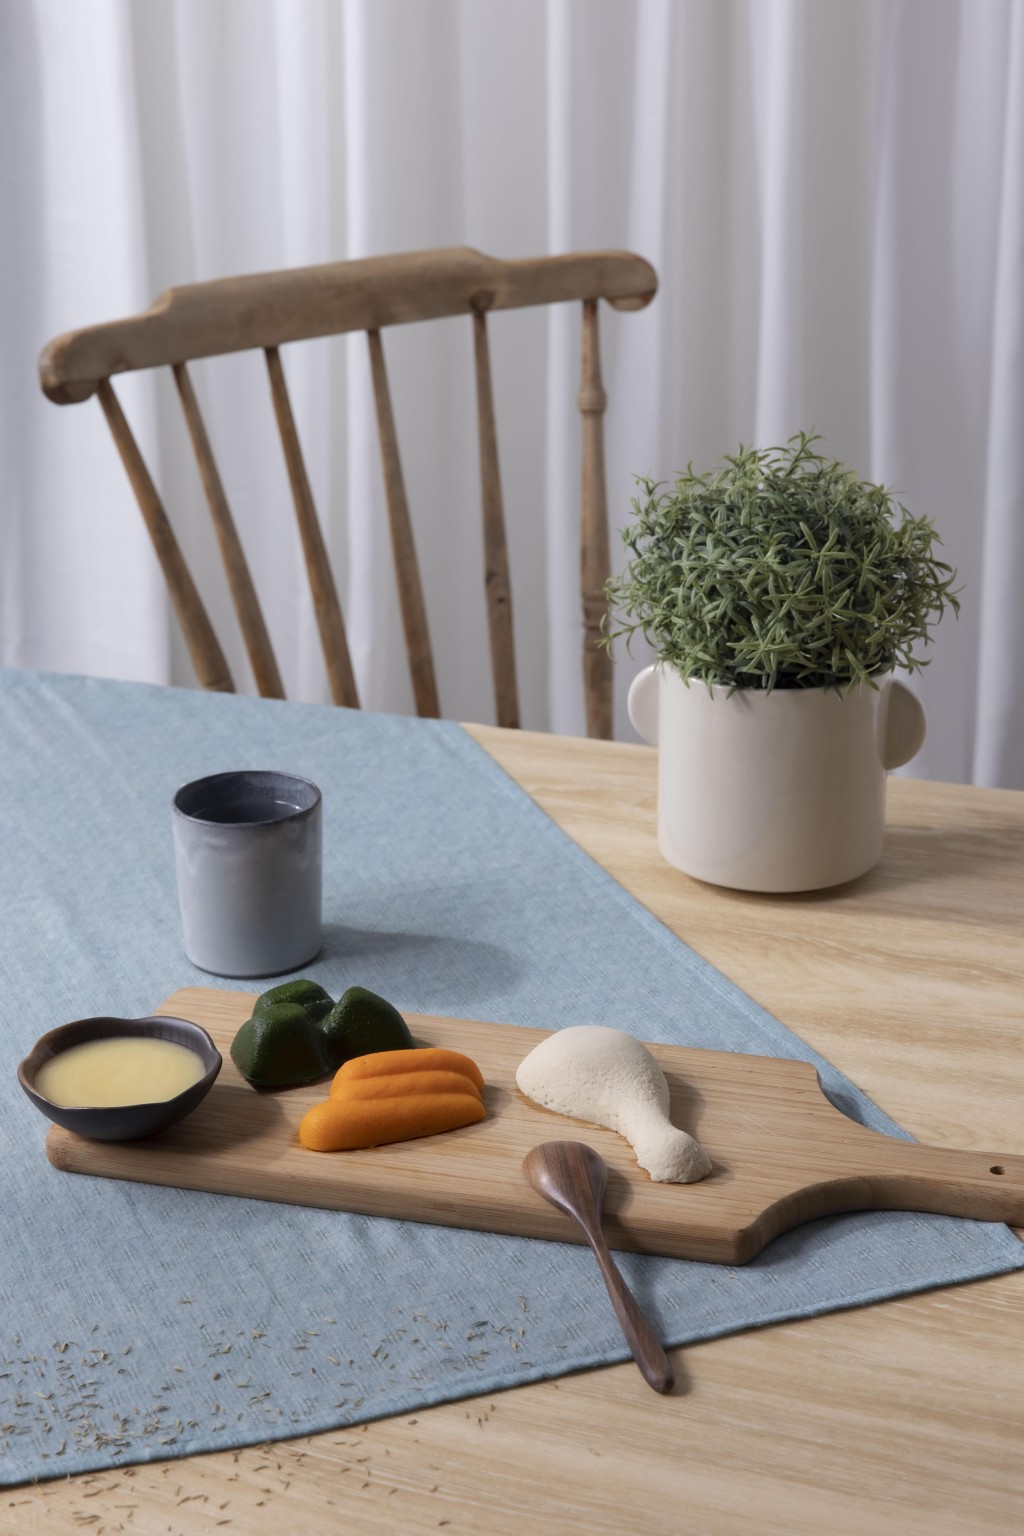 東華三院旗下社企品牌 CookEasy 推出的「家滋味軟餐」，希望讓年長體弱及吞嚥困難人士重嚐家常便飯的難忘滋味。